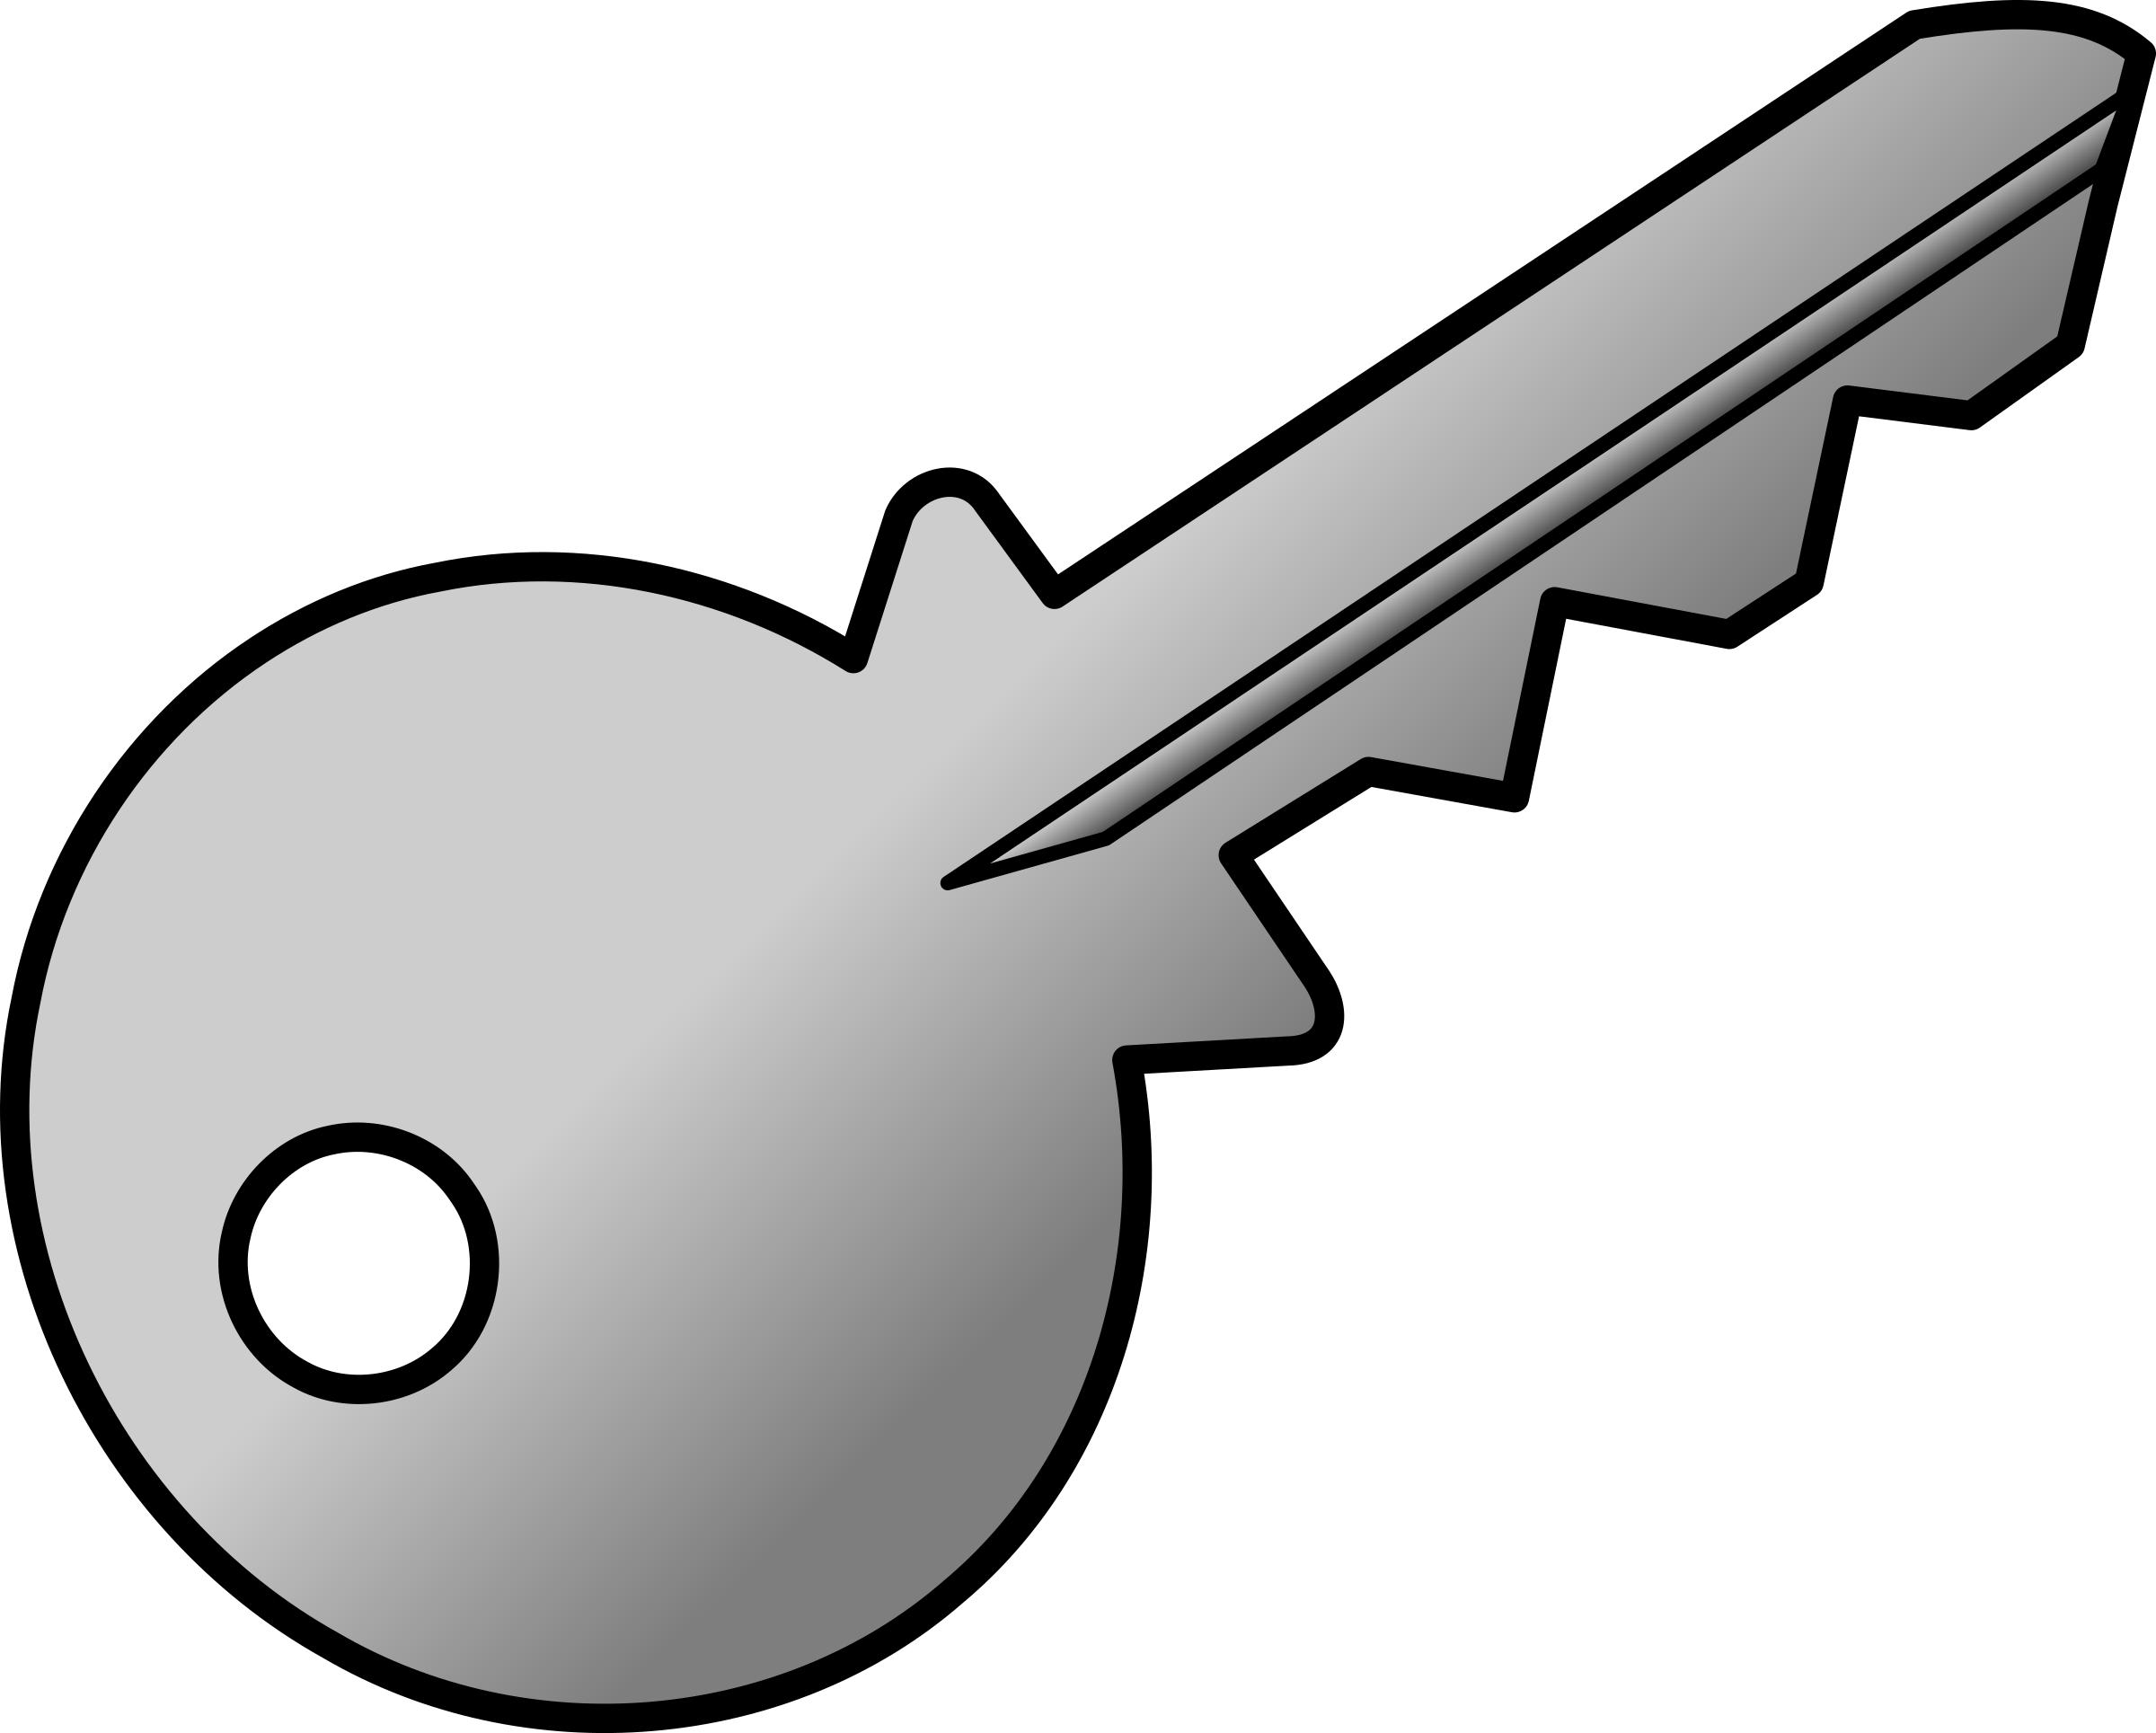 grey-shaded key png